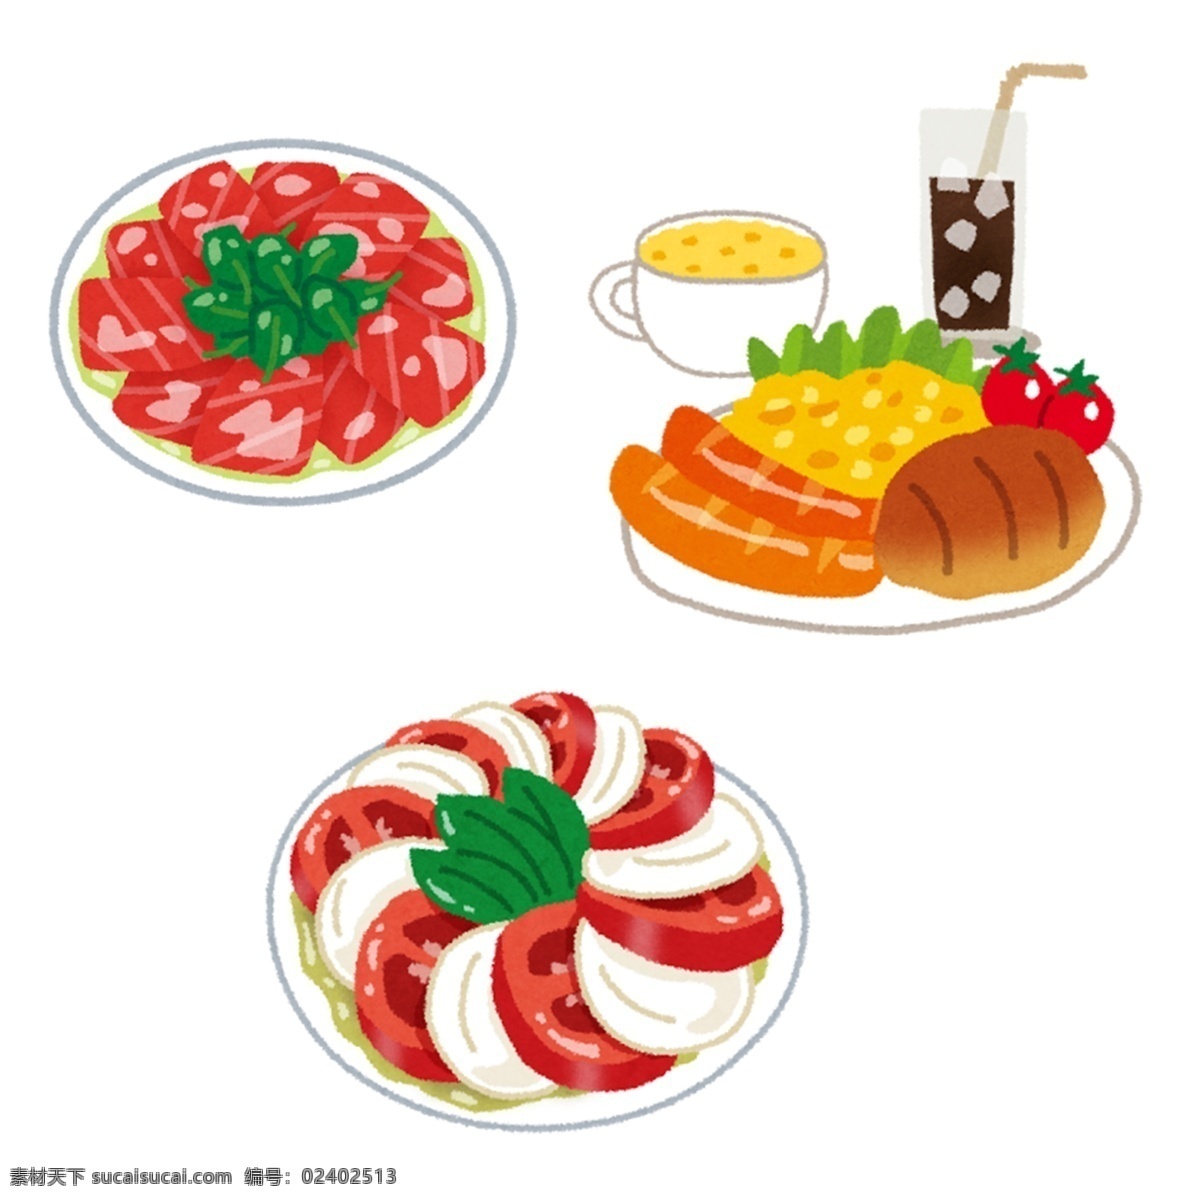 日本 水彩 手绘 食物 图标 设计素材 水彩手绘 食物图标